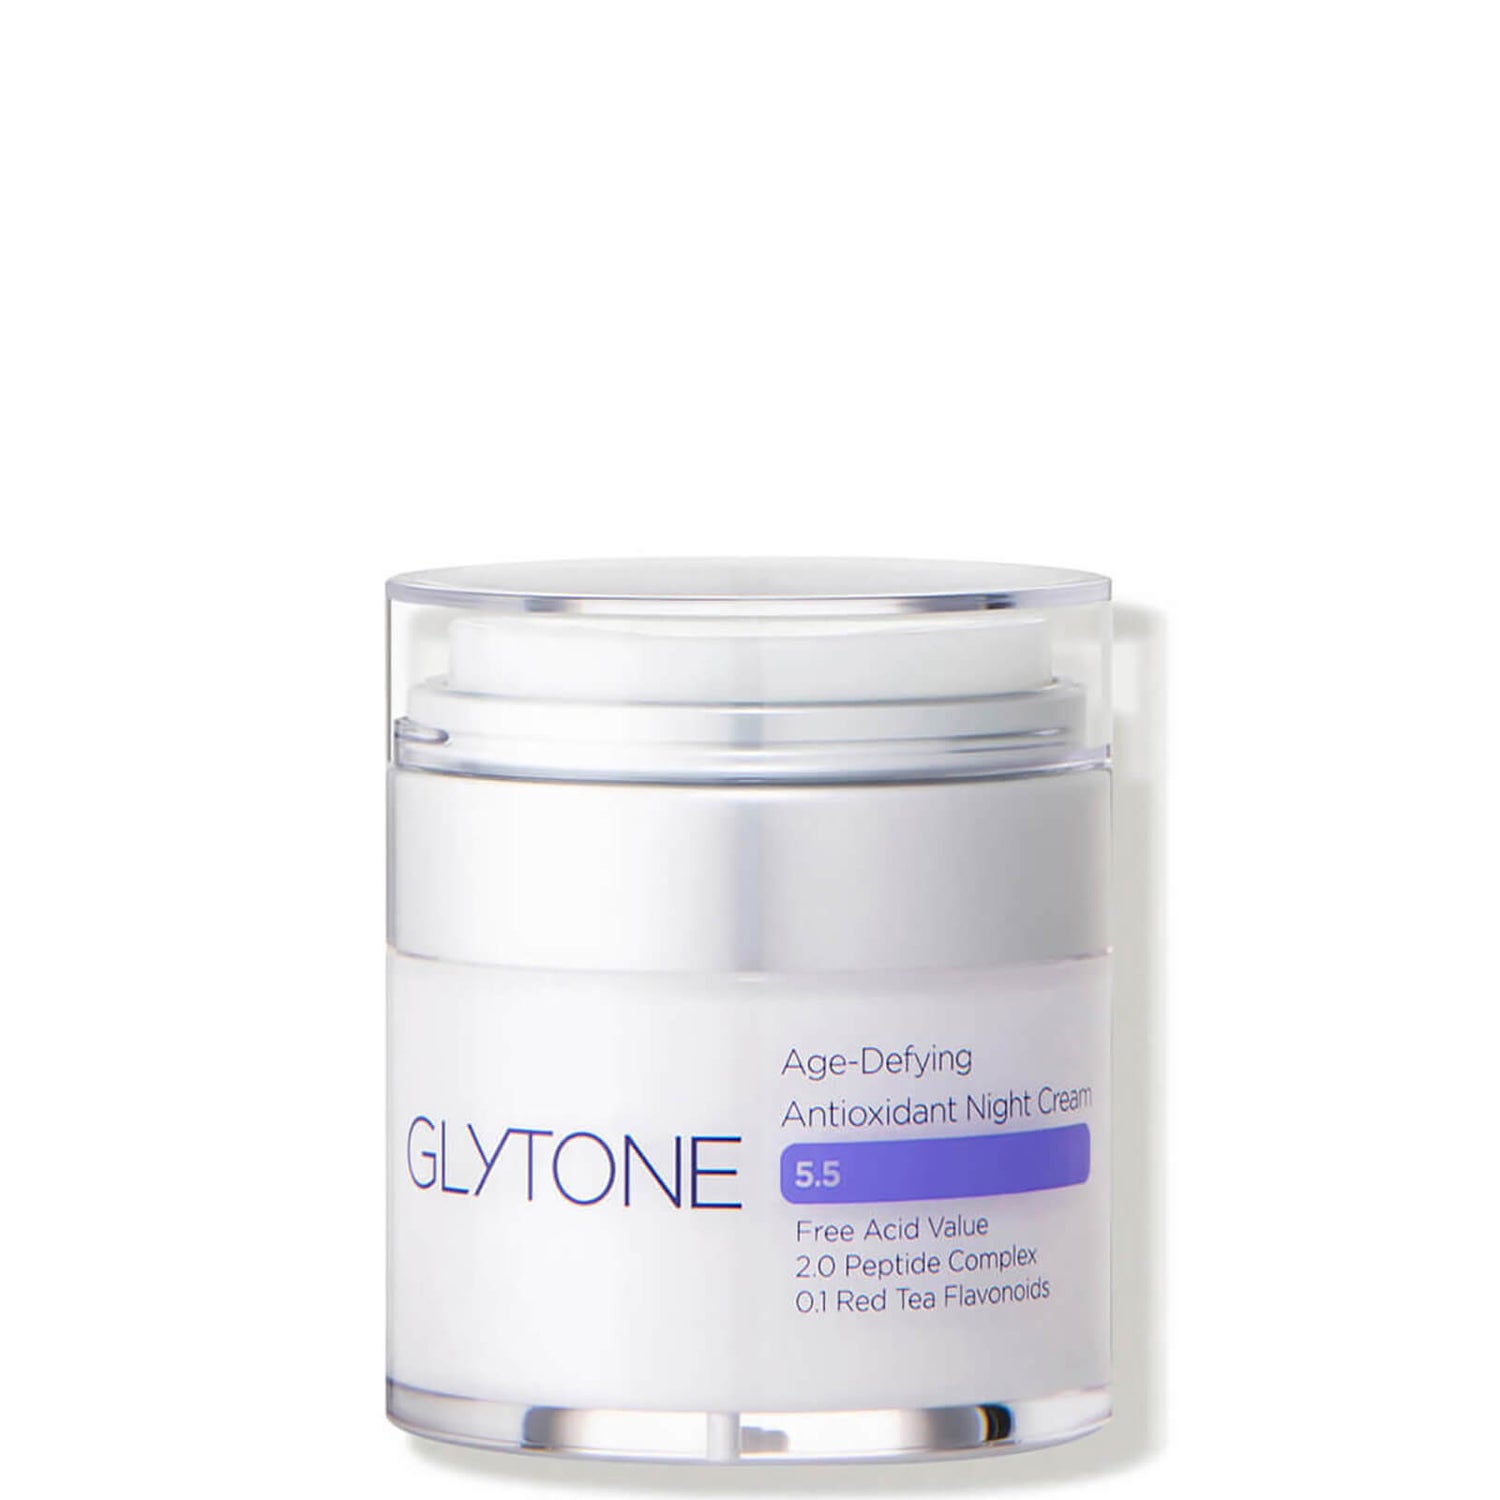 Glytone Age-Defying Antioxidant Night Cream (1 fl. oz.)